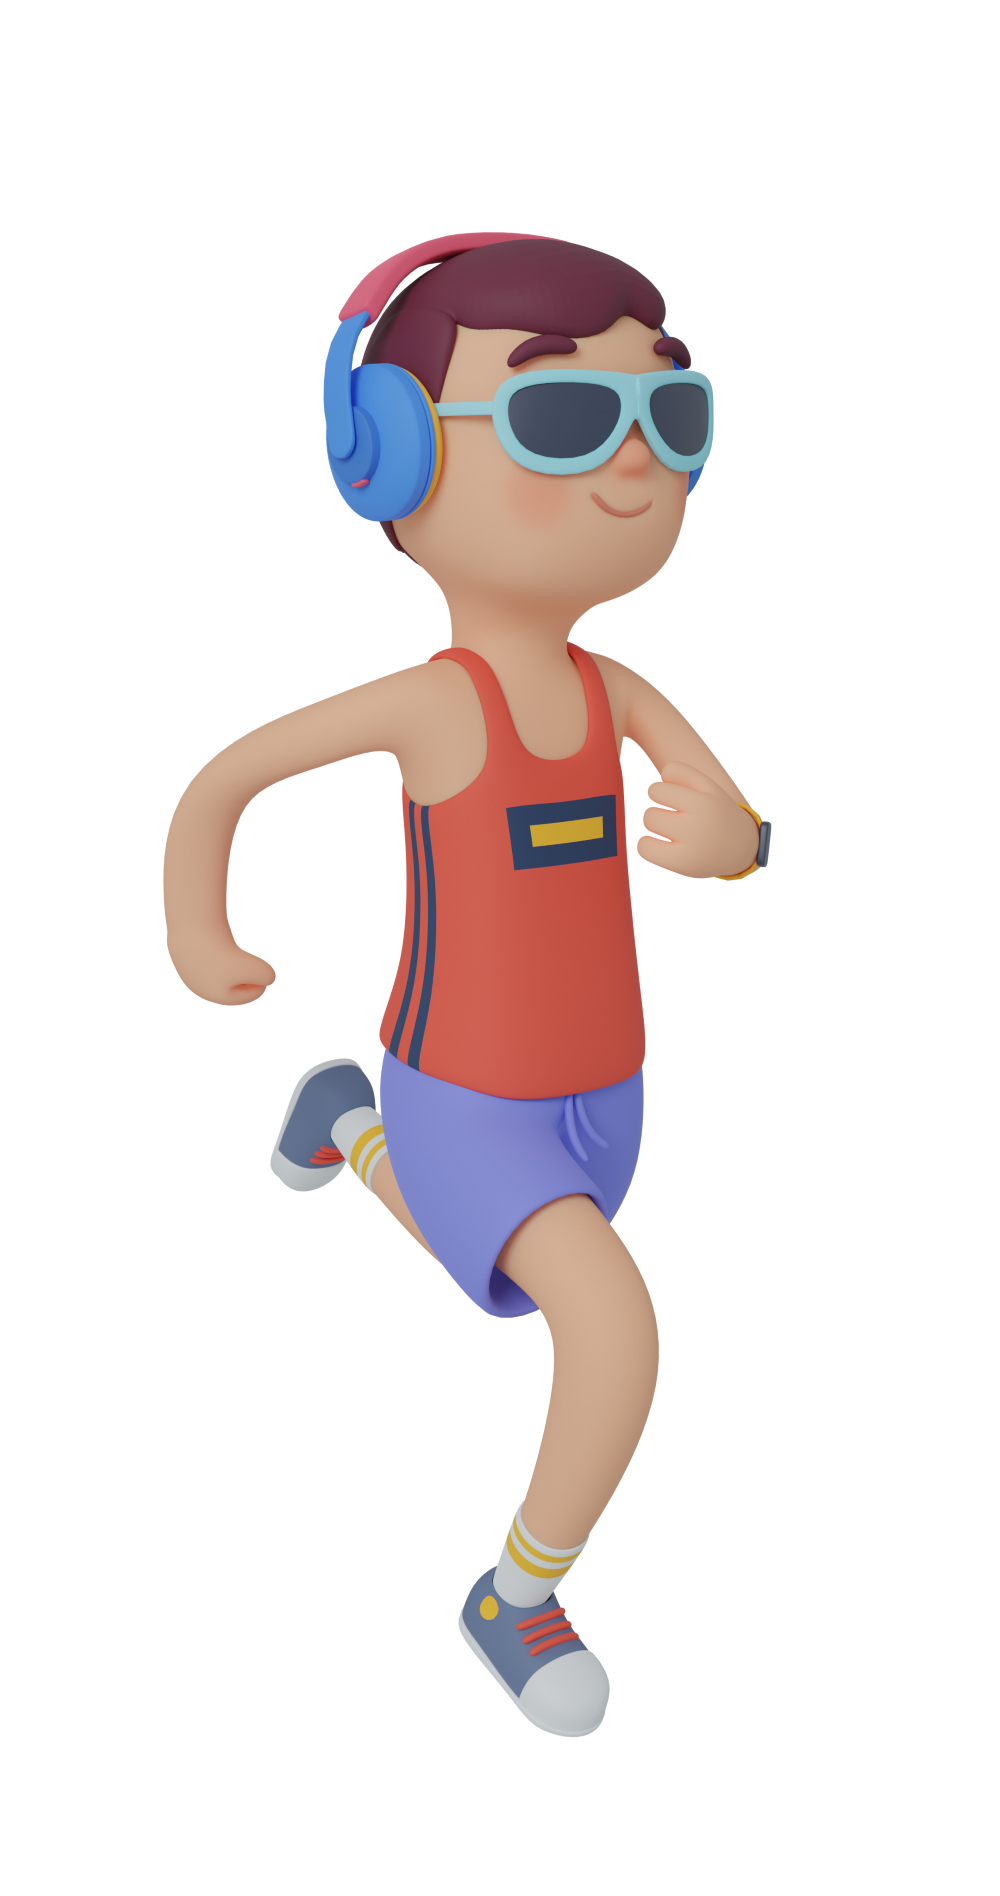 3d character design of a man running